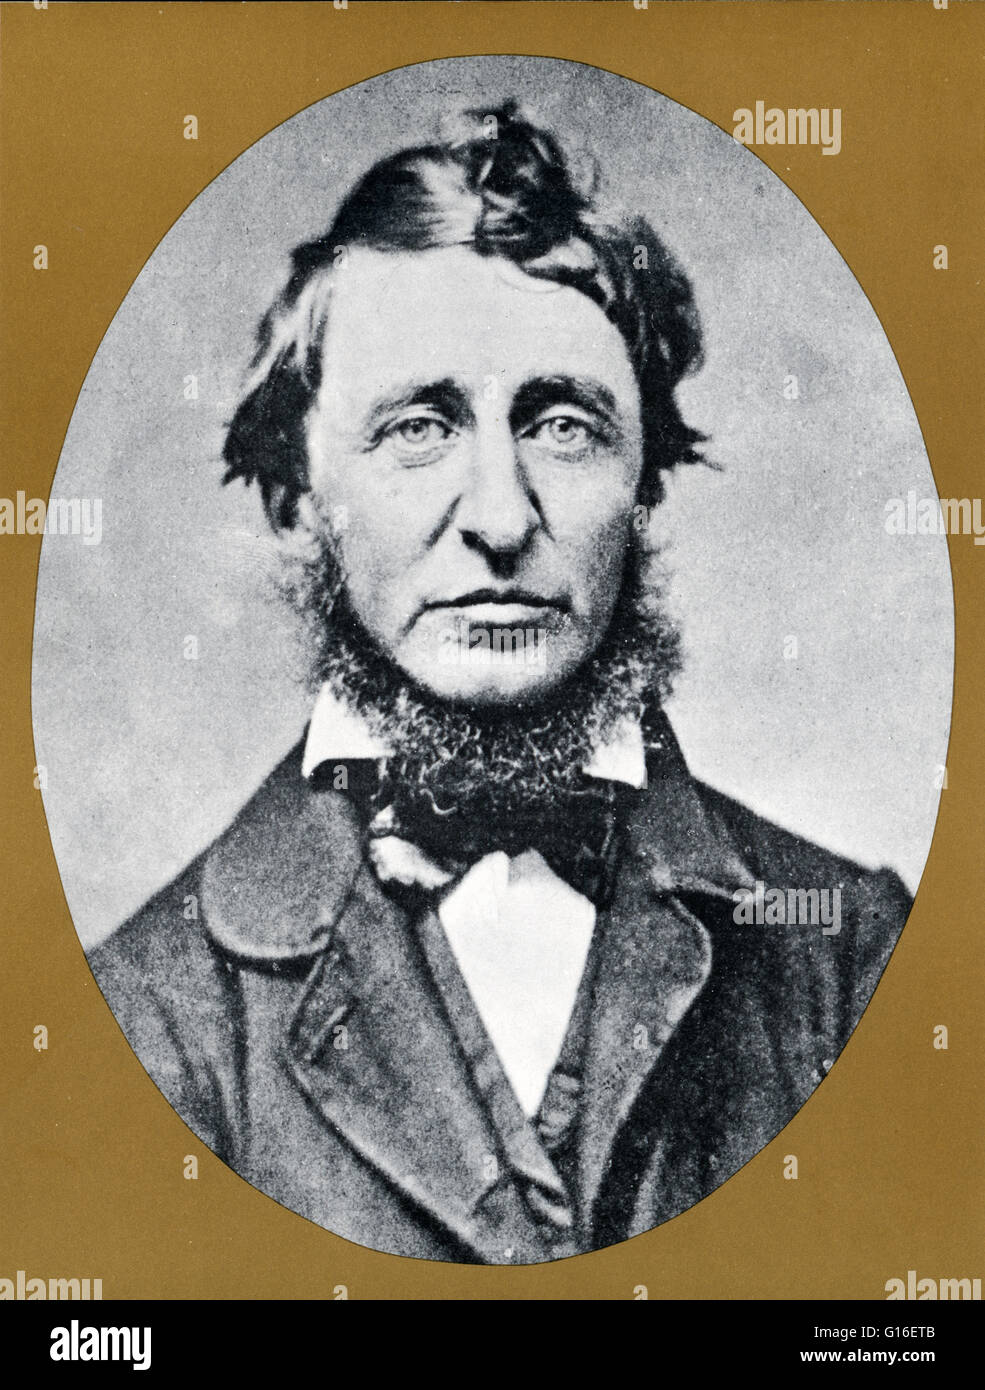 Thoreau (12. Juli 1817 - 6. Mai 1862) war ein US-amerikanischer Schriftsteller, Dichter, Philosoph, Freimaurer, Abolitionist, Naturforscher, Steuer Resister, Entwicklung Kritiker, Landvermesser, Historiker und führenden Transzendentalisten. Er ist bekannt für sein Buch Walden, ein Stockfoto